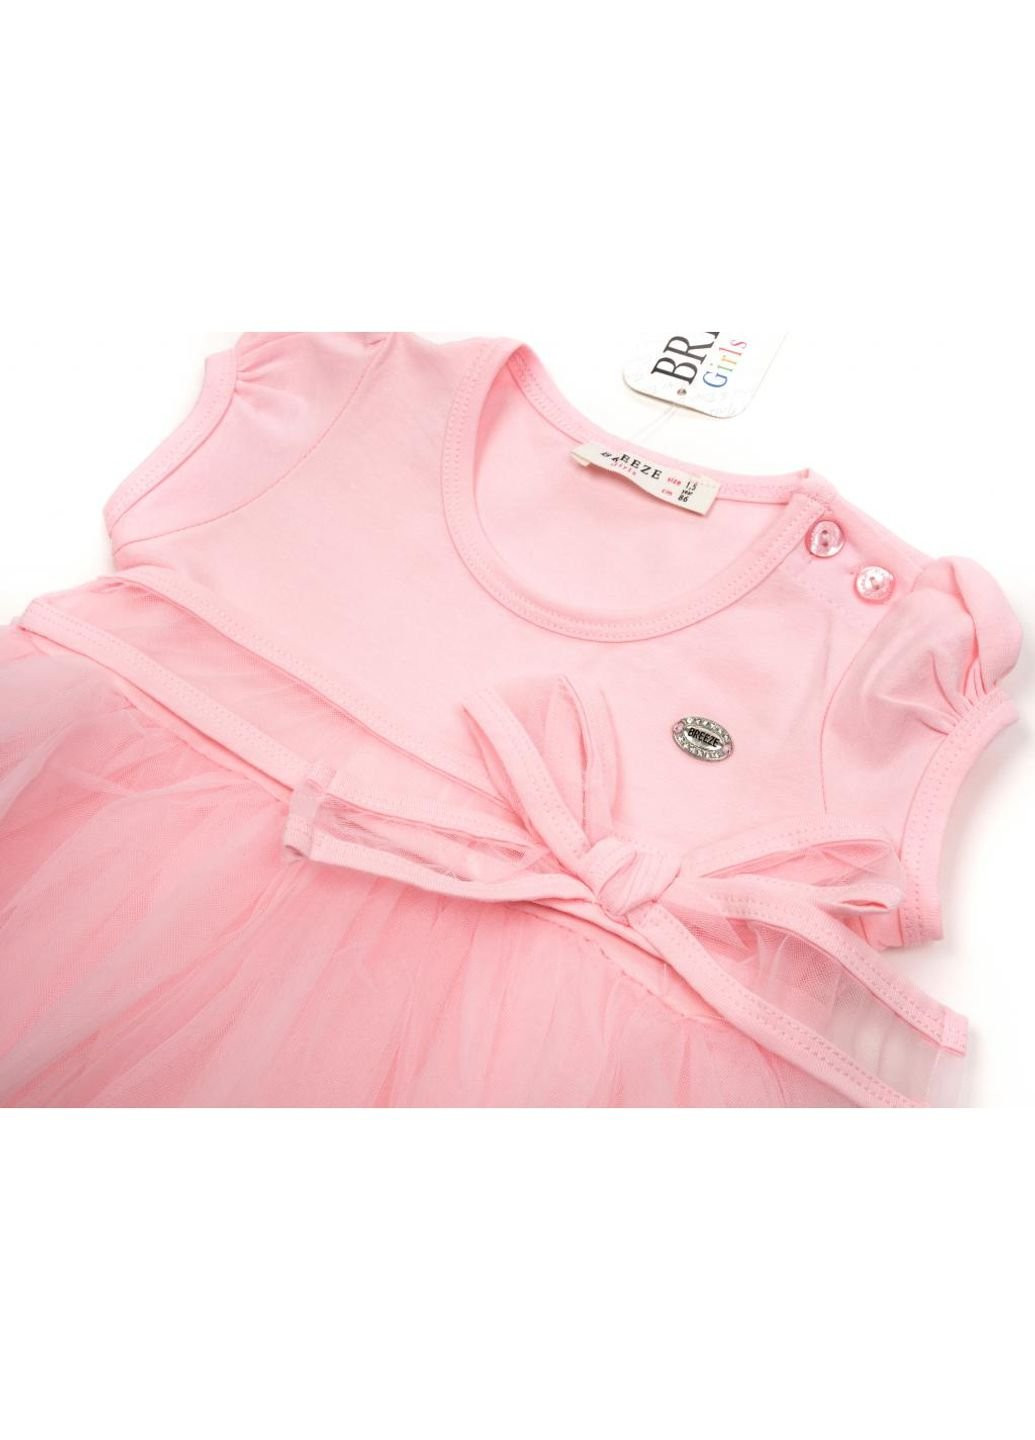 Розовое платье с фатиновой юбкой (14251-110g-peach) Breeze (251326769)